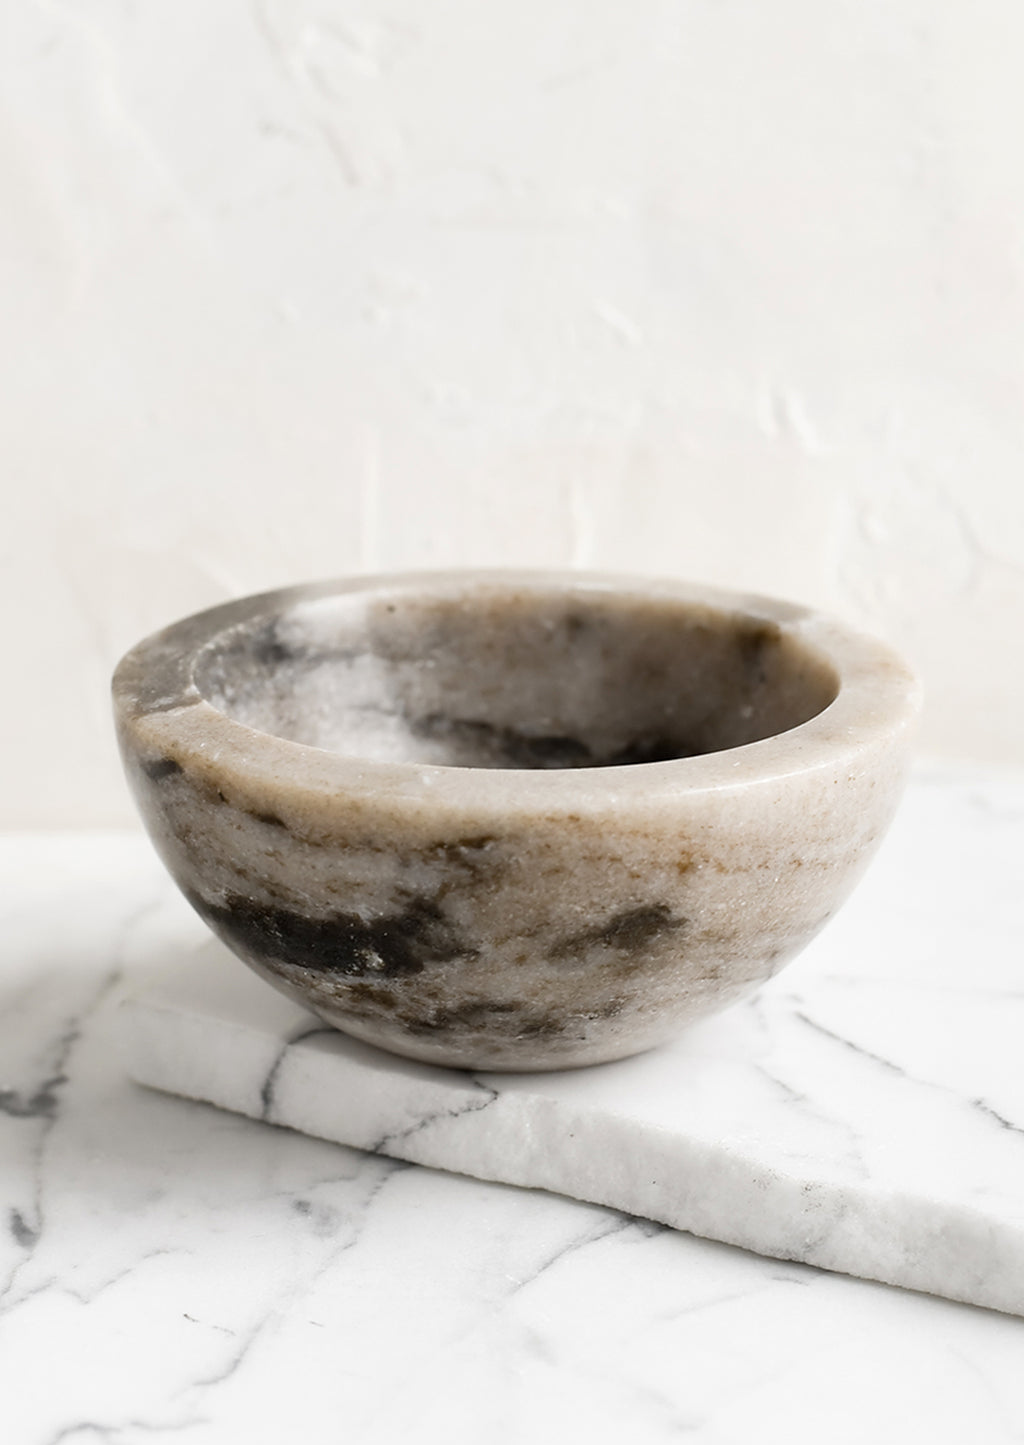 Tan: A small tan marble bowl.